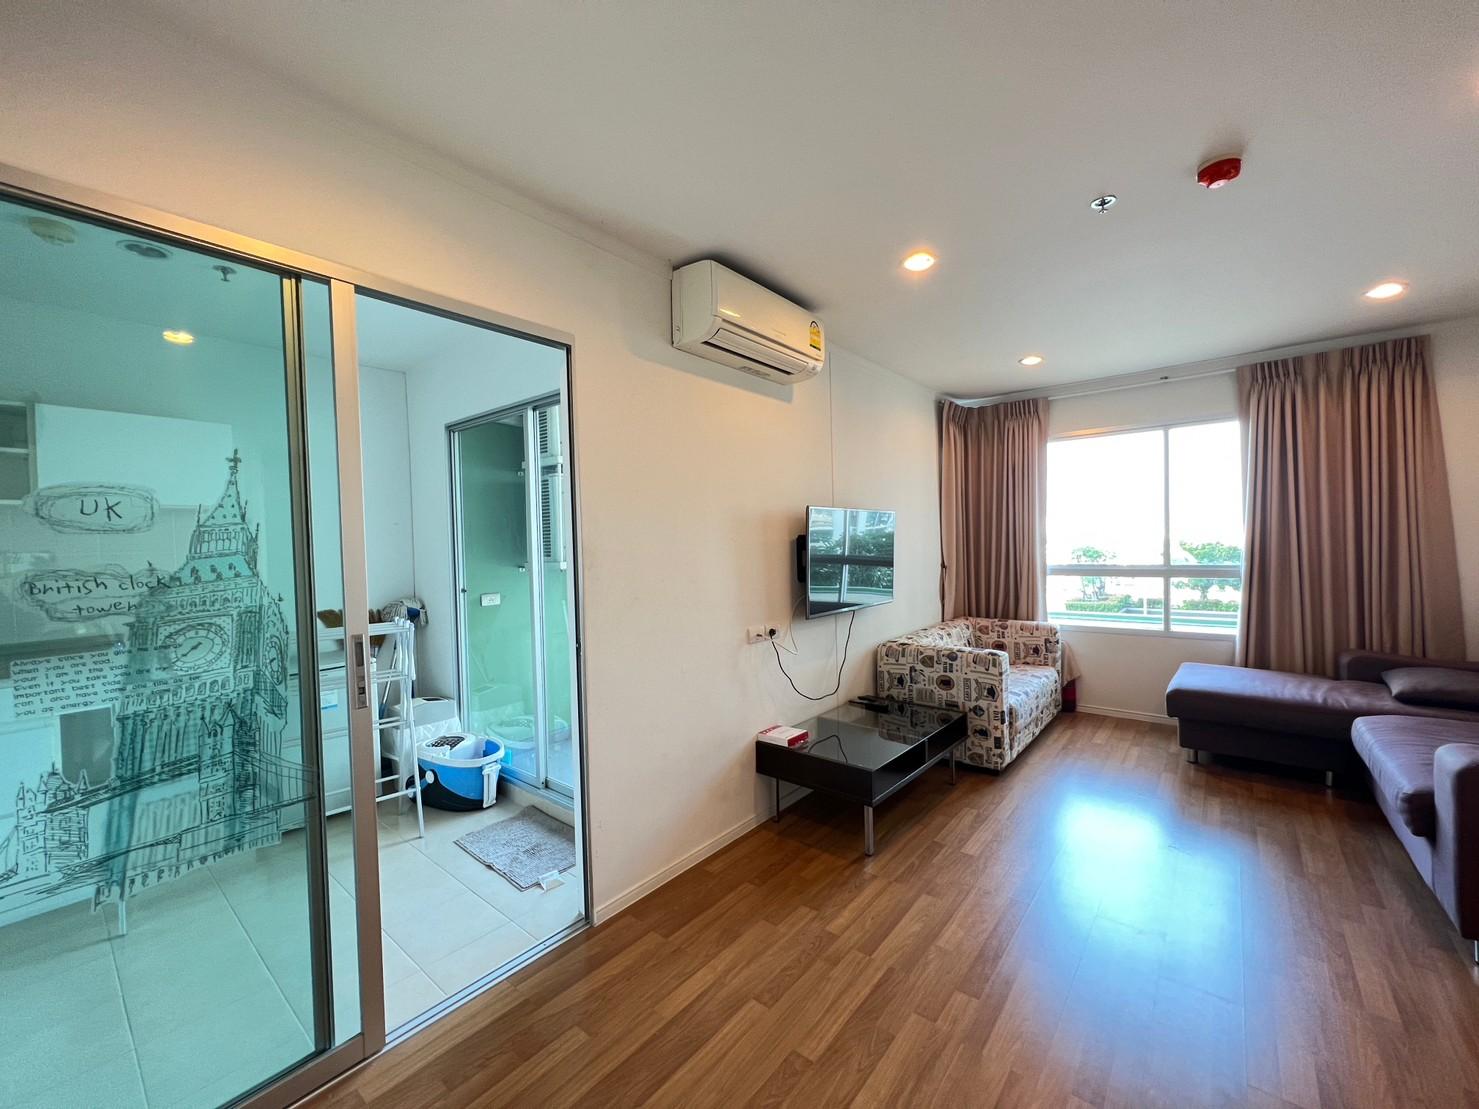 เช่าคอนโด ลุมพินี เพลส สุขสวัสดิ์ - พระราม2 คอนโดมิเนียม - Condo Rental Lumpini Place Suksawat - Rama2 condominium - 2645021